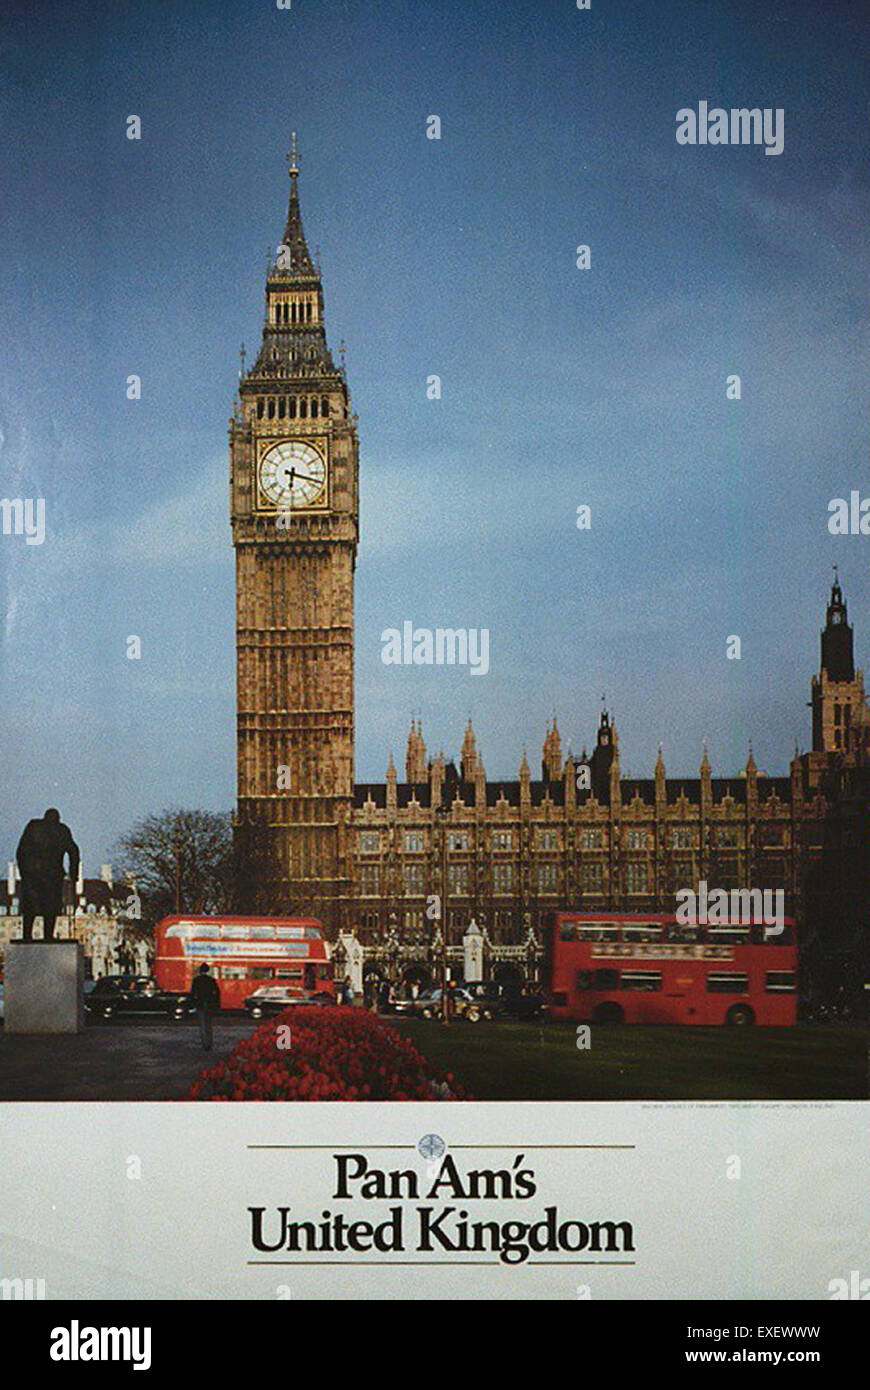 Cartel de PanAm, Reino Unido Foto de stock